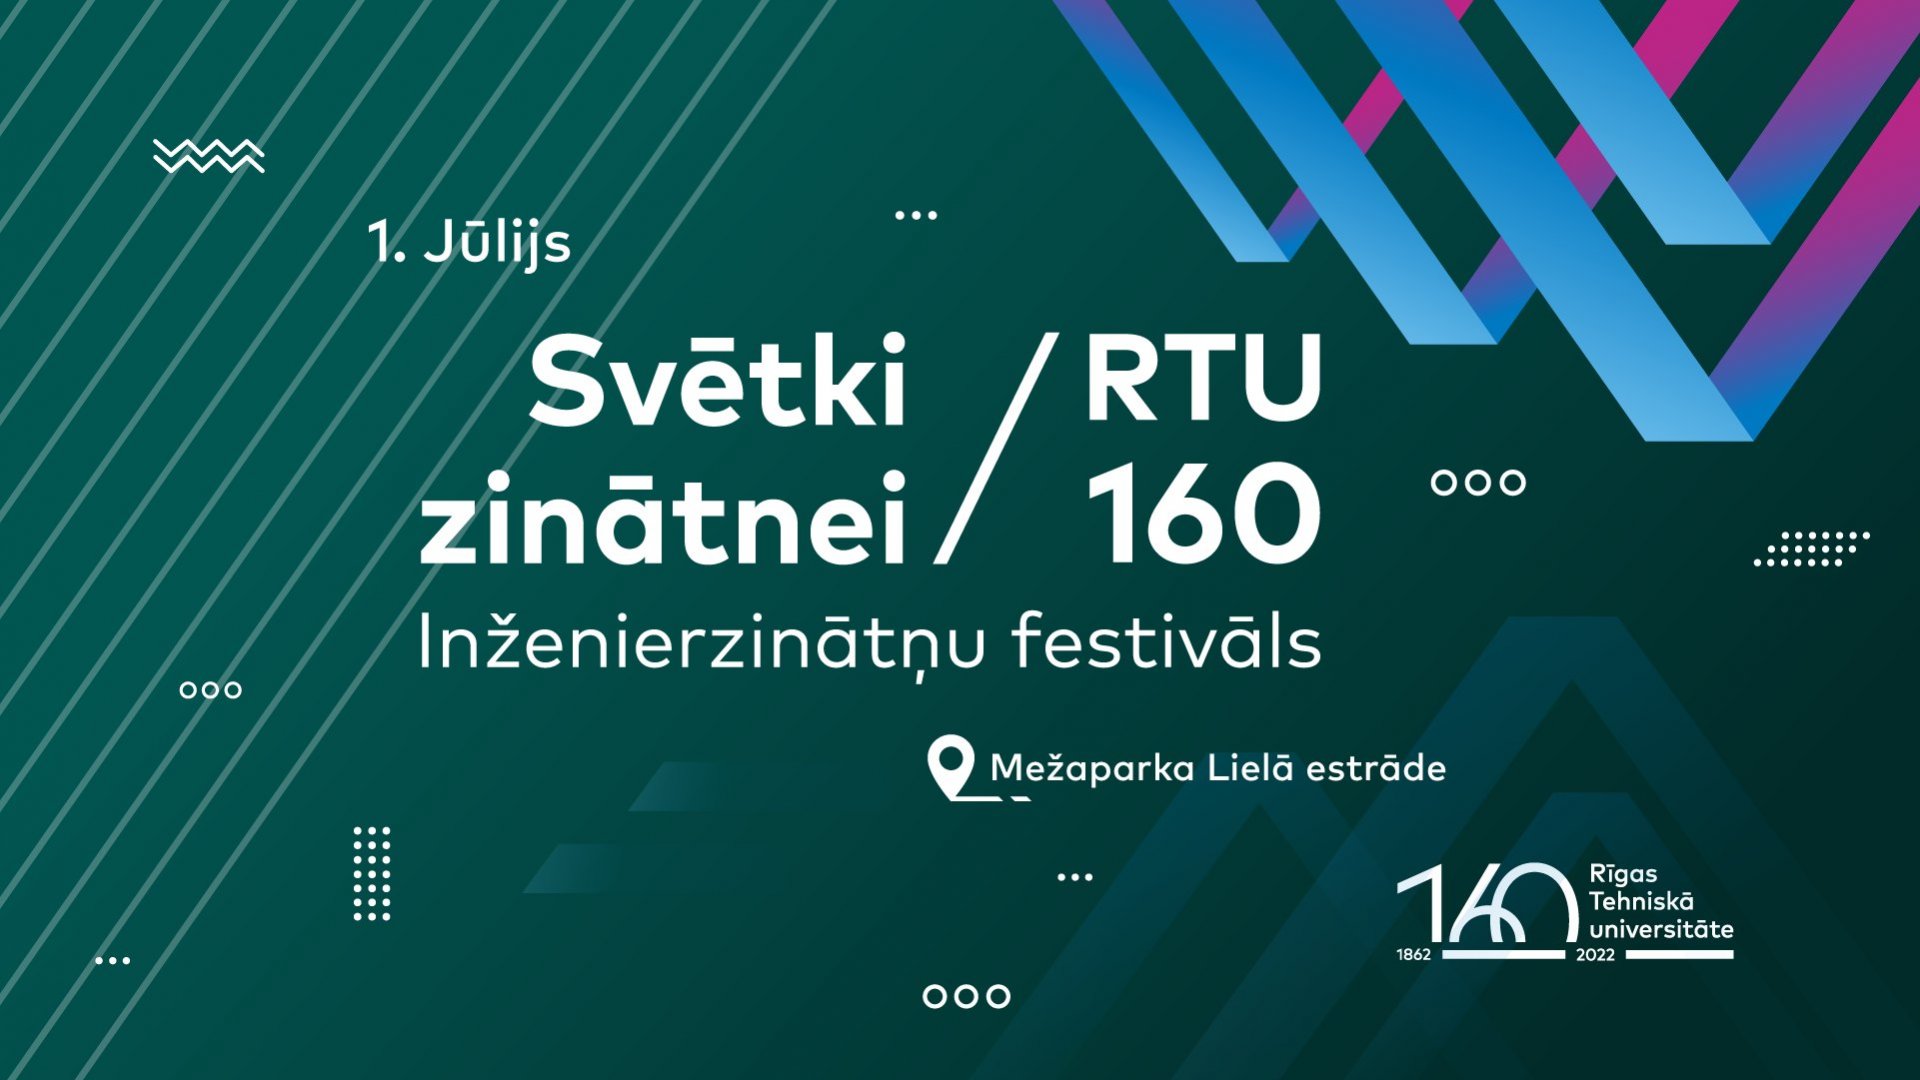 Inženierzinātņu festivāls «Svētki zinātnei - RTU 160» un RTU Lielais izlaidums